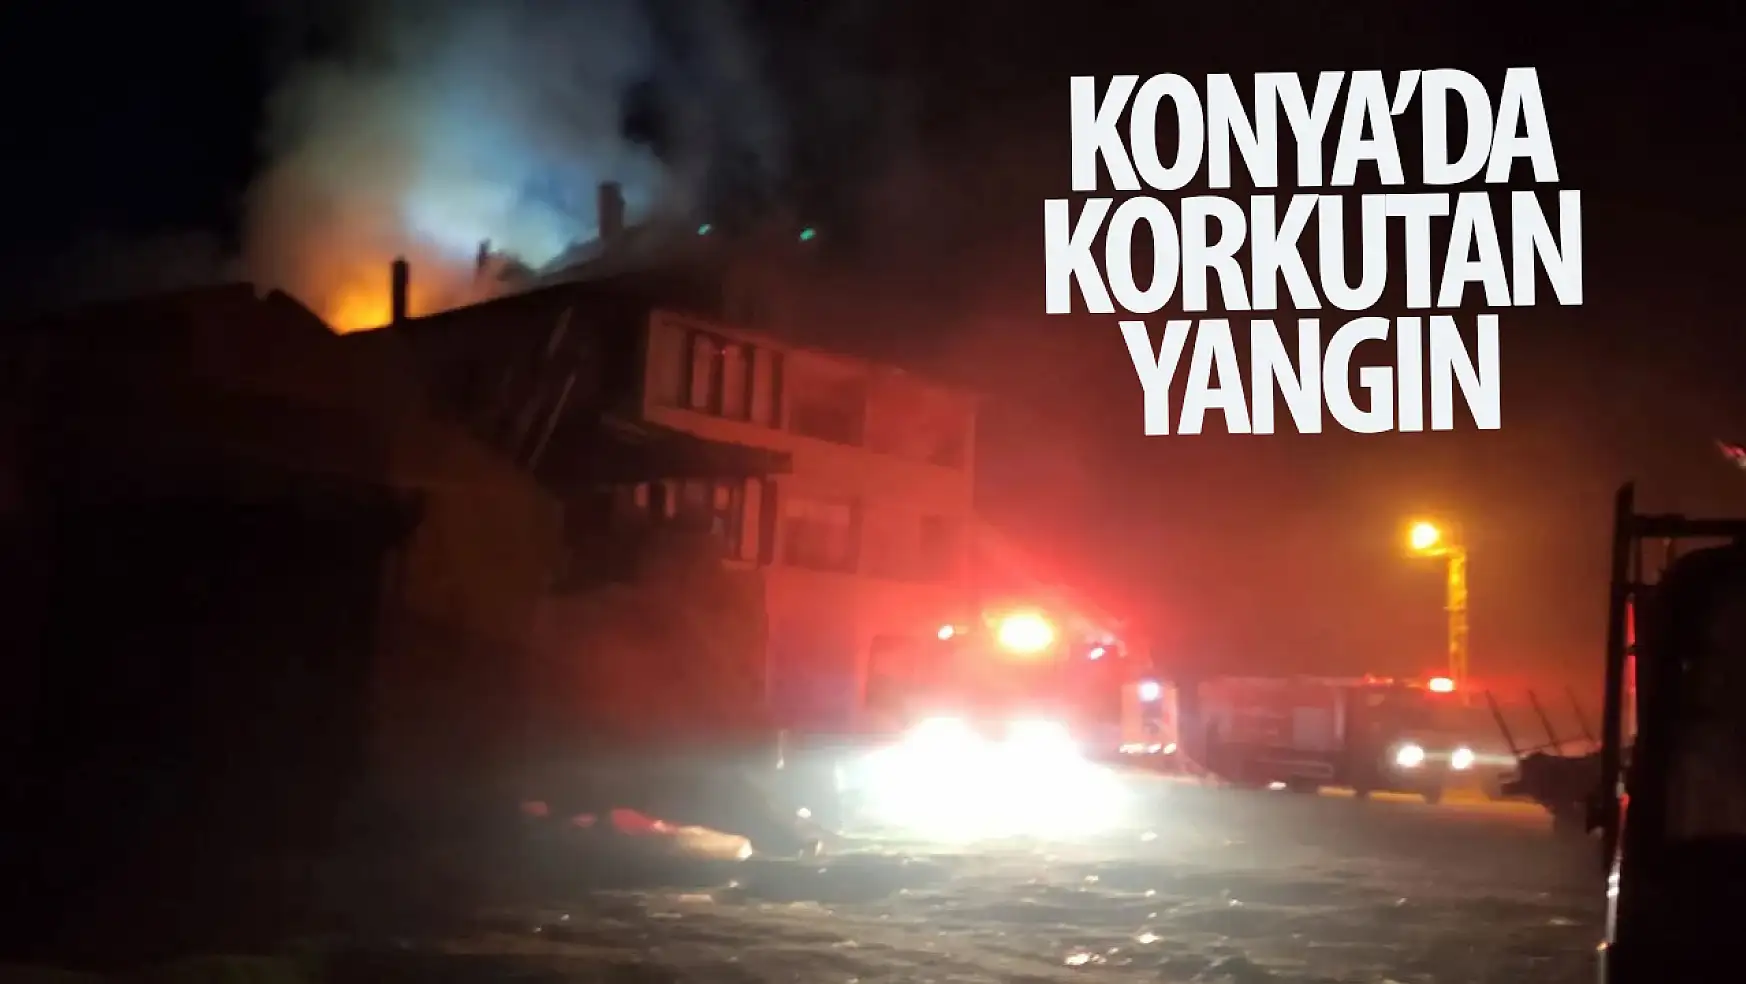 Konya'da korkutan yangın o ilçede yaşandı!